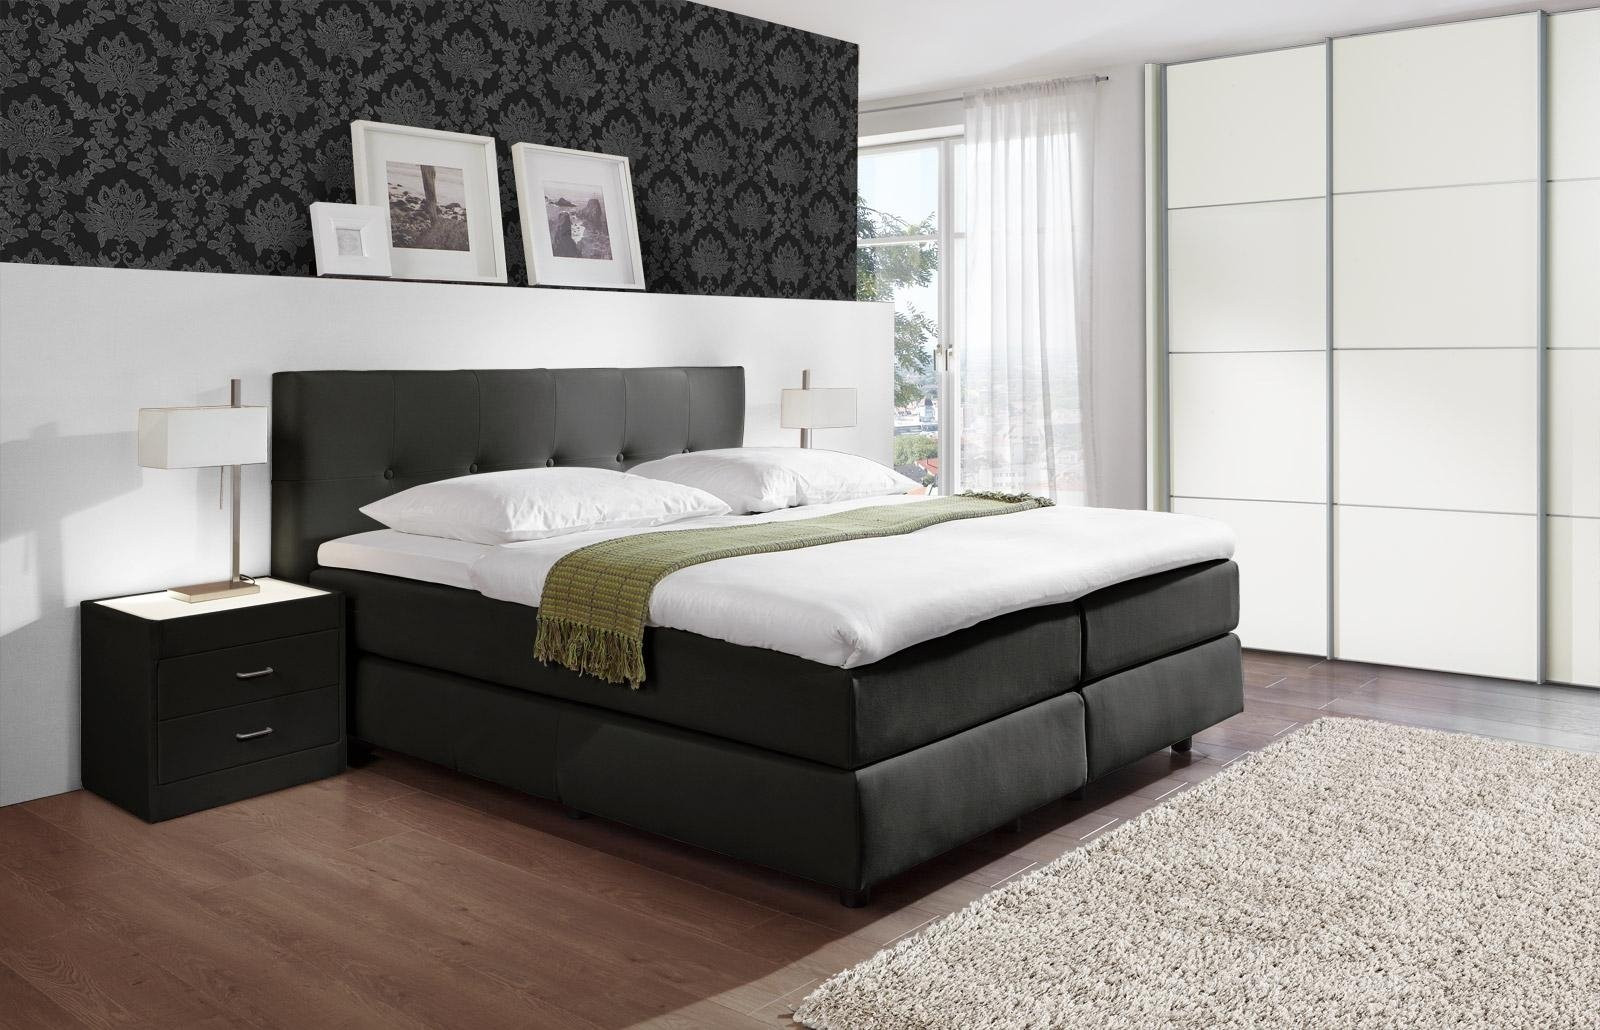 Komplett Schlafzimmer Günstig
 schlafzimmer komplett günstig mit boxspringbett – Deutsche